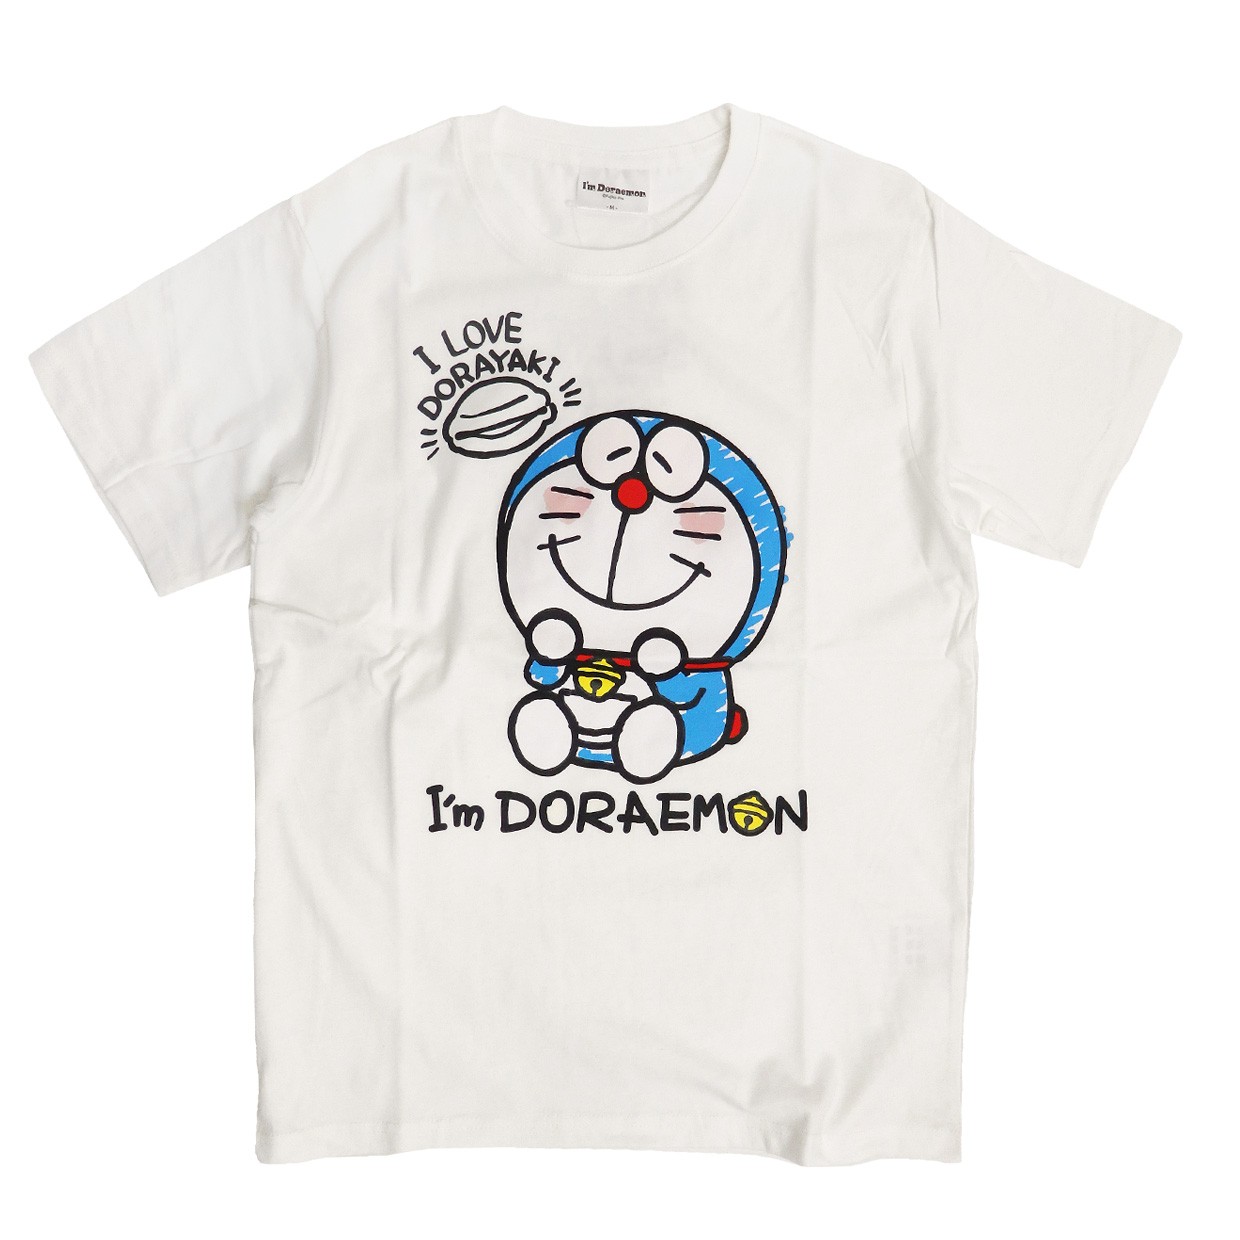 ドラえもん Tシャツ アイムドラえもん キャラクターtシャツ I M Doraemon イラスト プリントtシャツ 半袖 クルーネック Tss 384 Tss 384 Renovatio 通販 Yahoo ショッピング